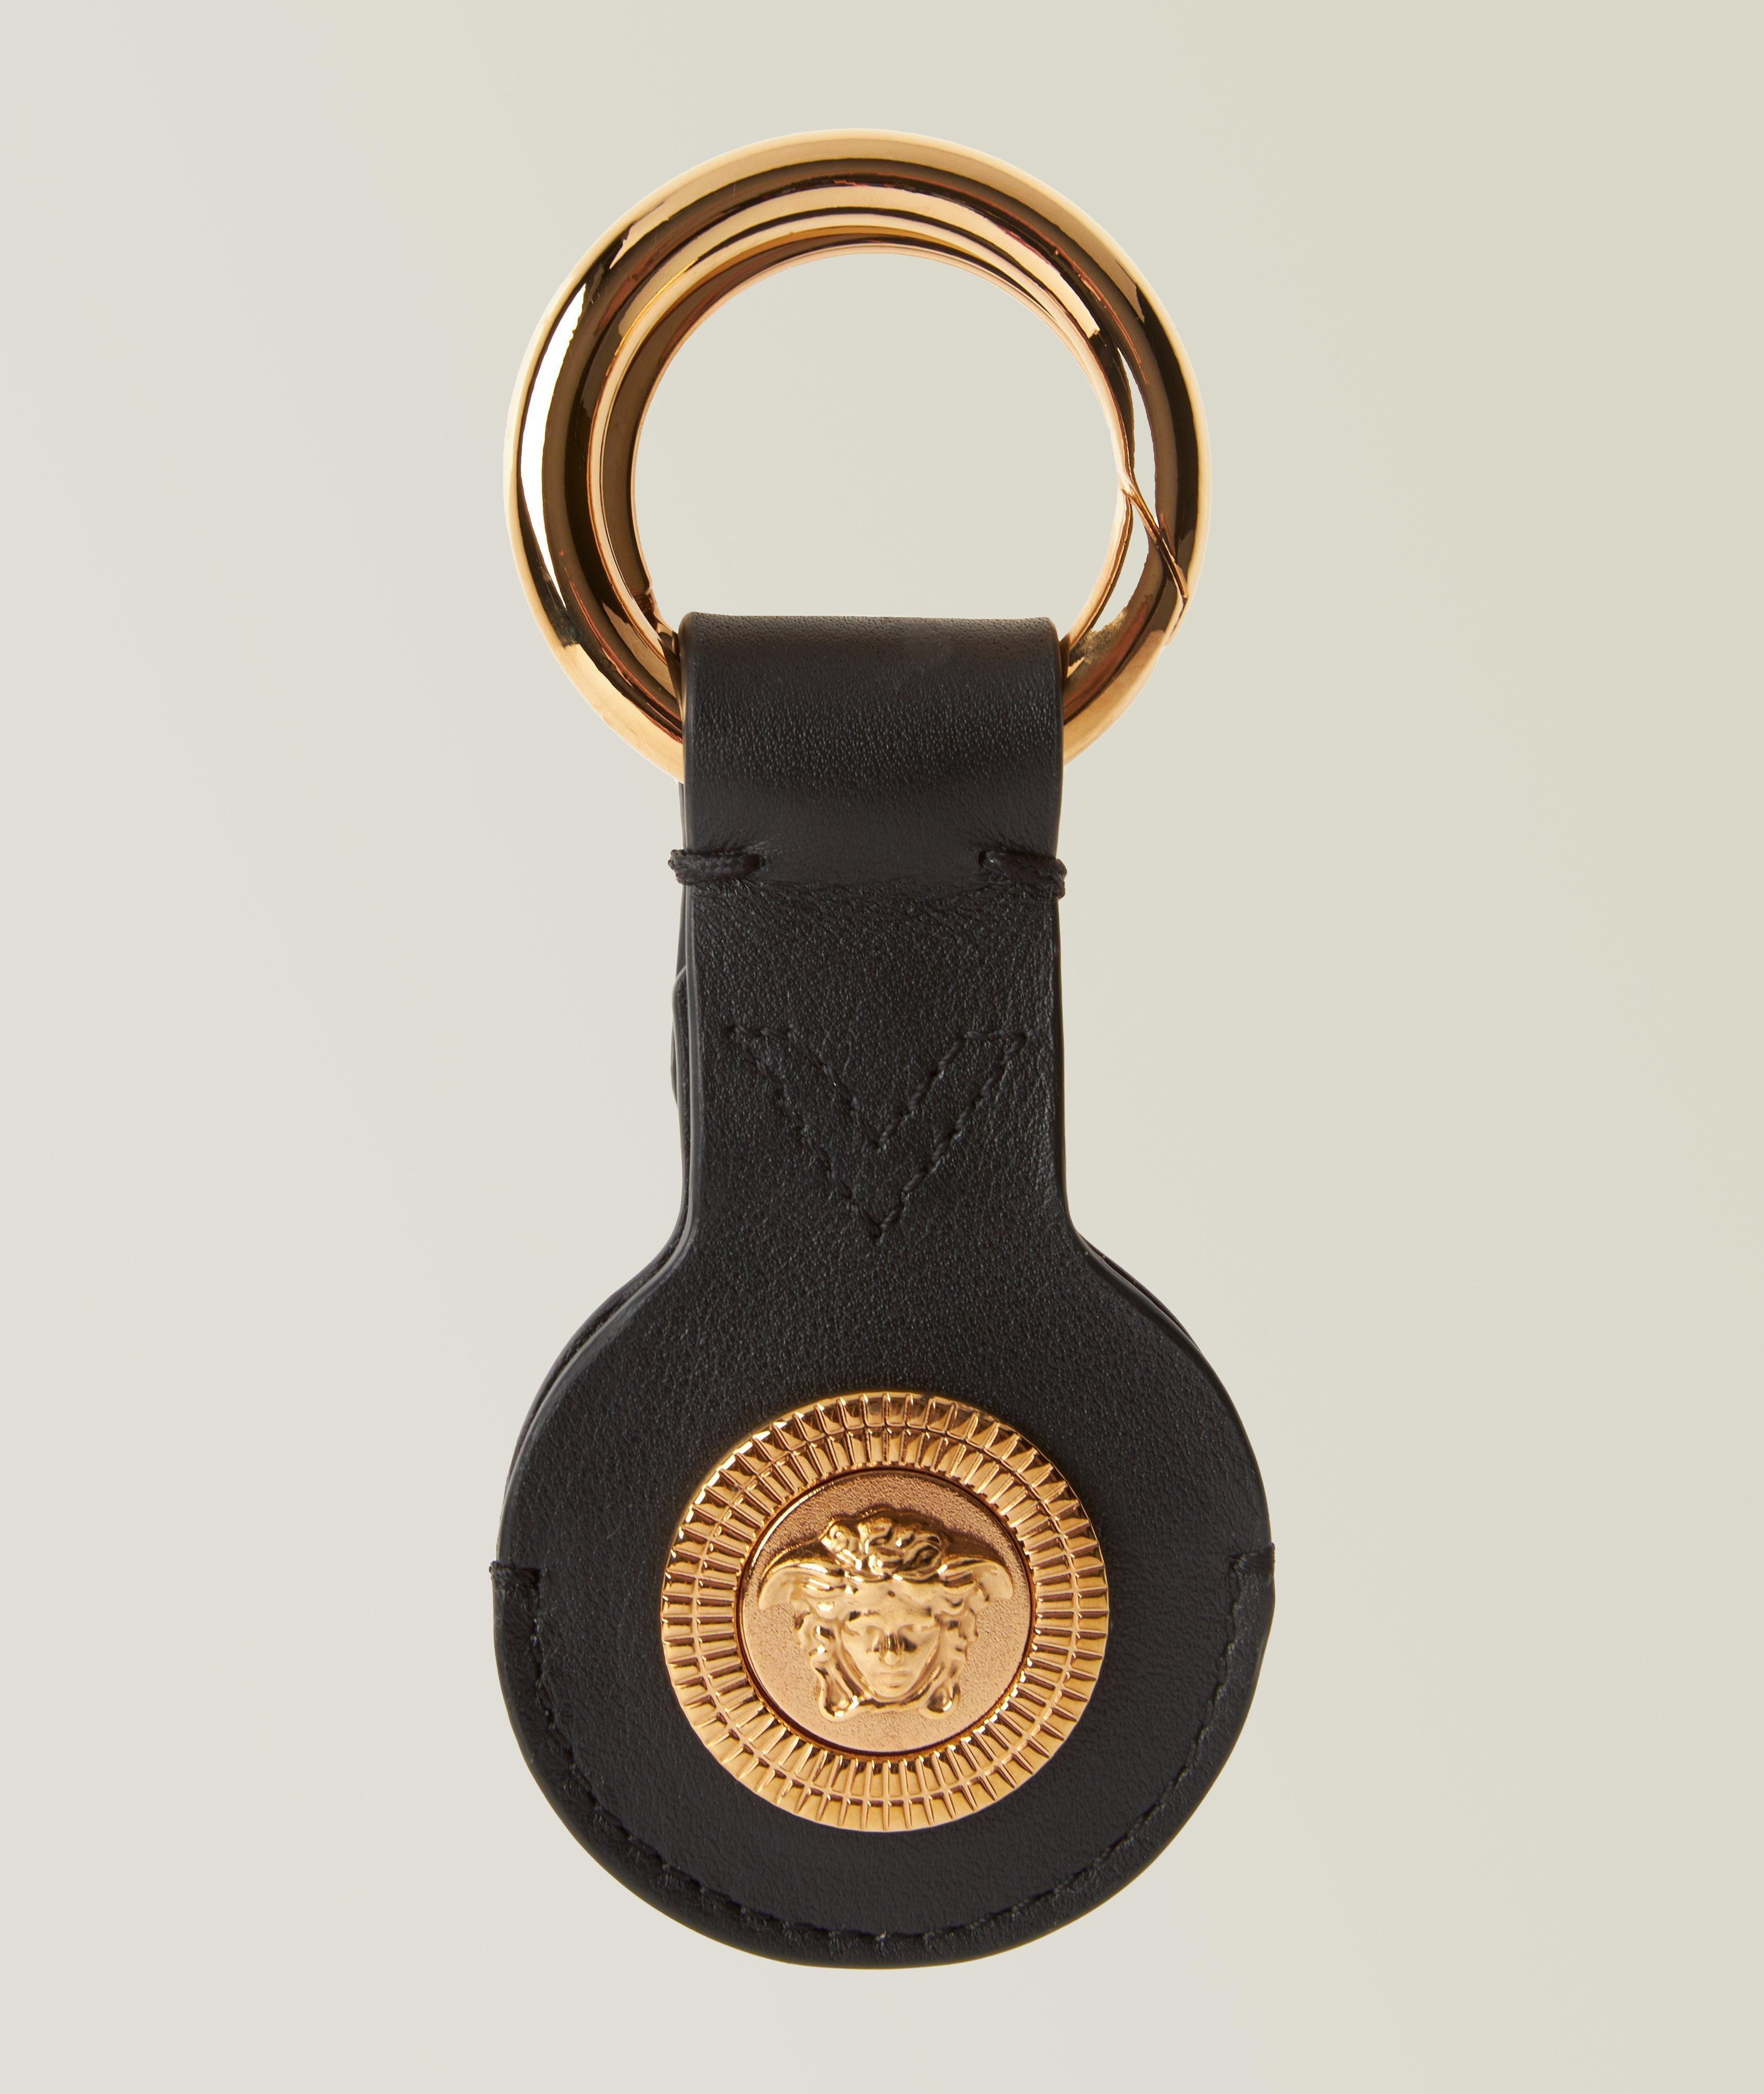 Porte-clés en cuir avec logo de Méduse image 0